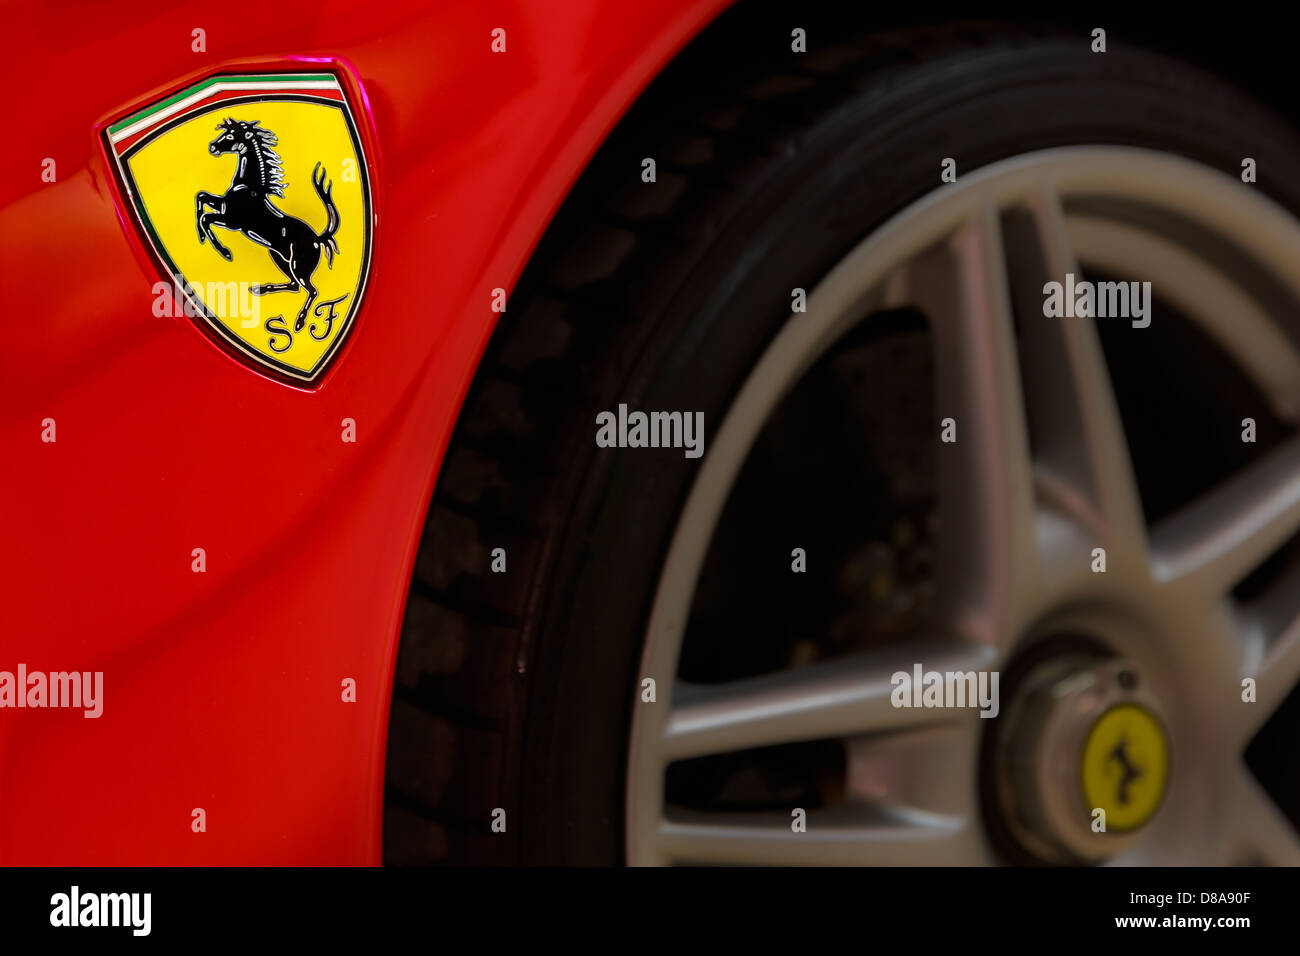 Ferrari logo - Cavallino rampante, Moranello, Italy Stock Photo